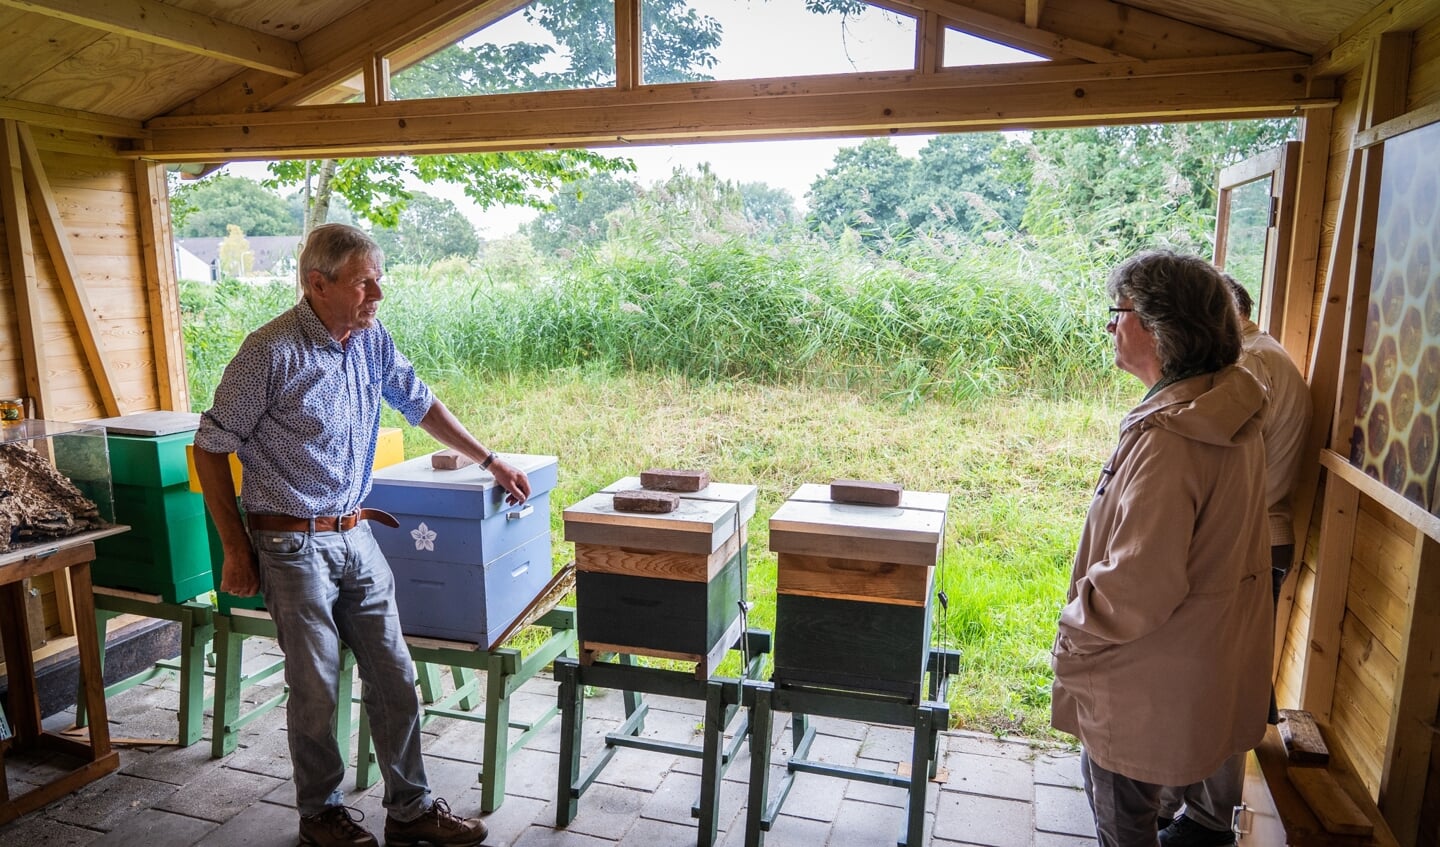 Uitleg over de bijenkasten en bijenvolken.